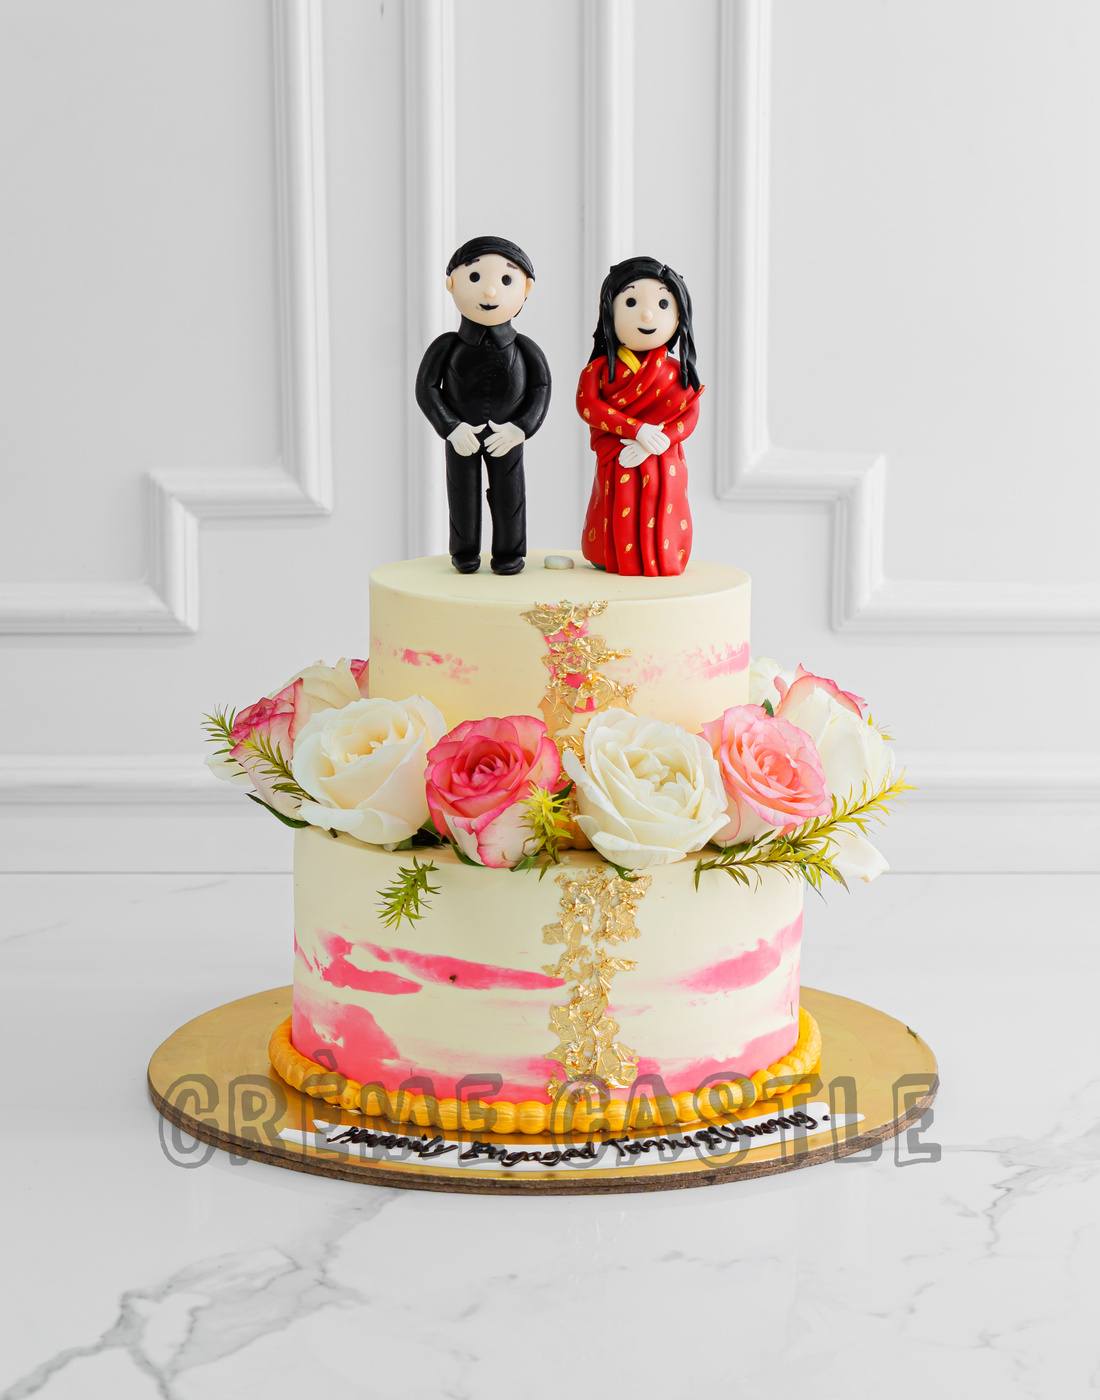 Vegas In Style Wedding Cake – Freed's Bakery